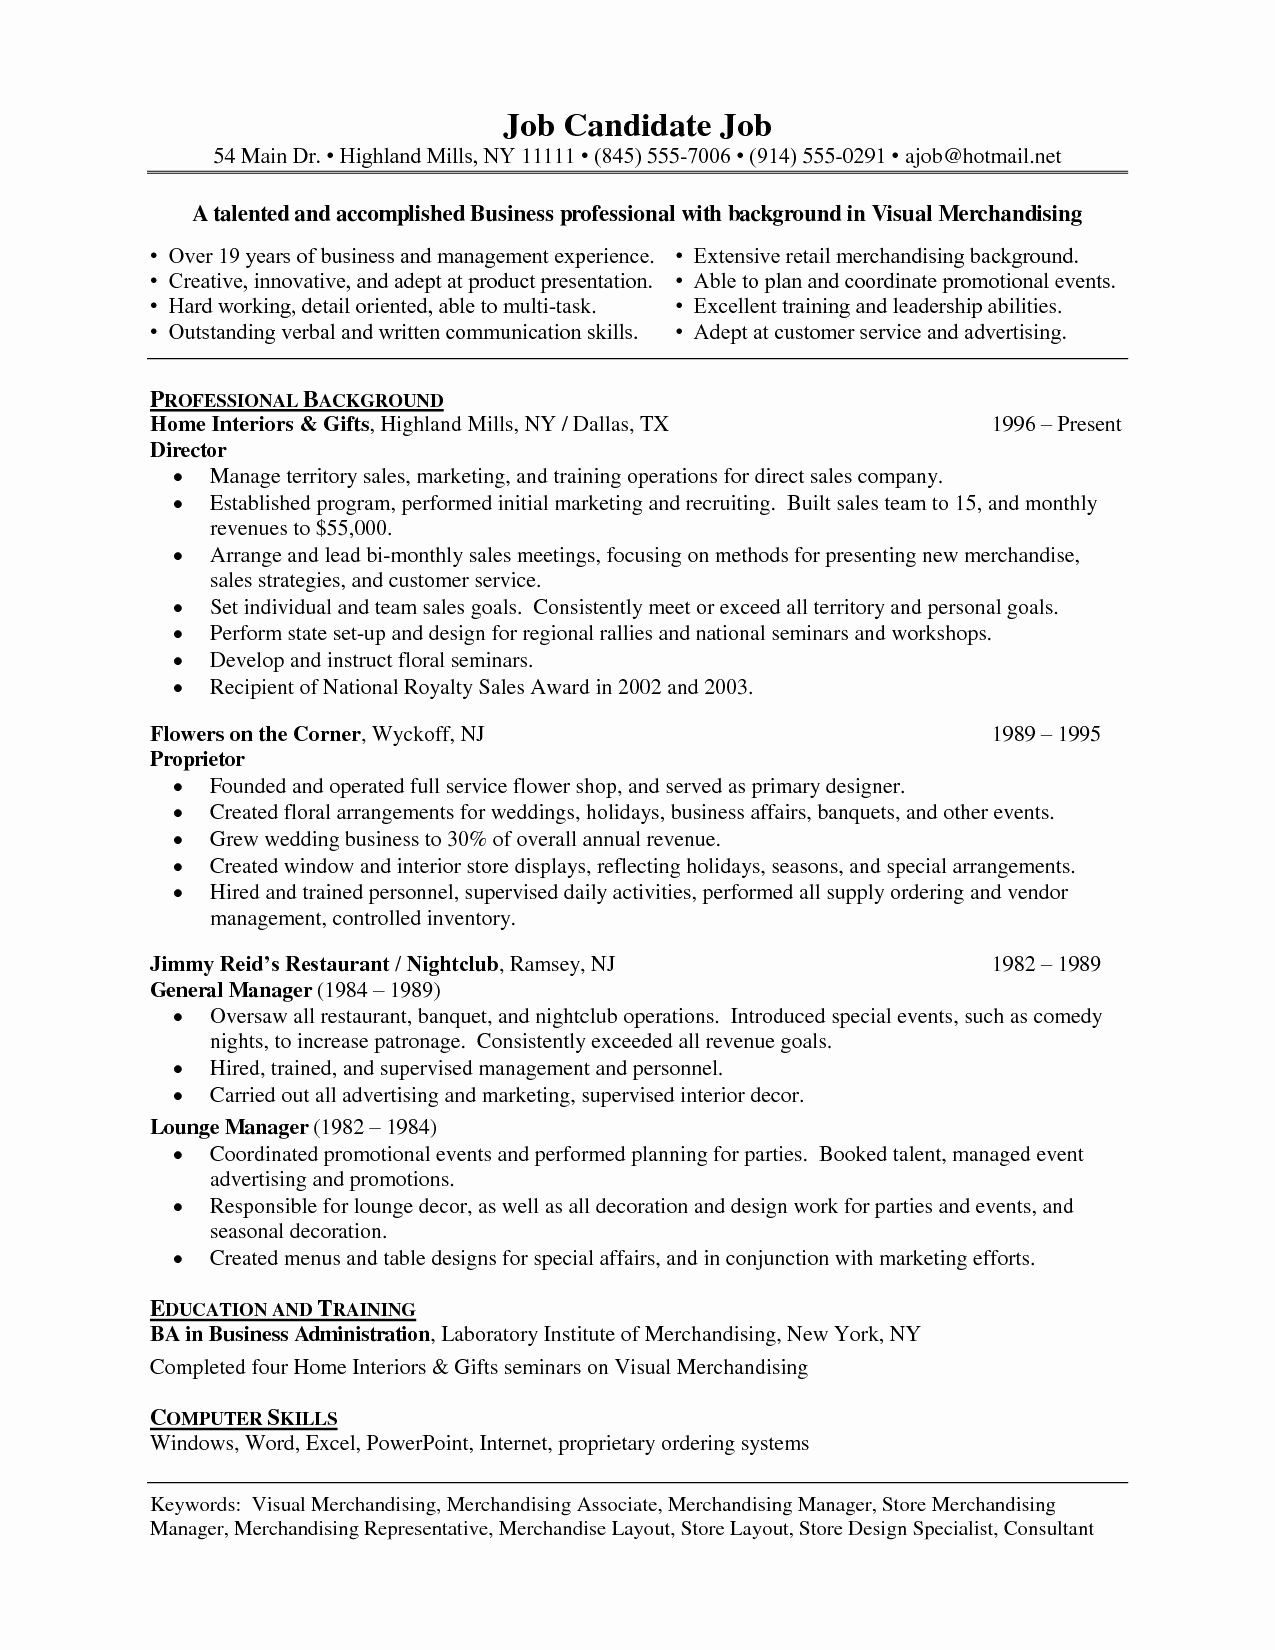 Sample Resume for Merchandiser Job Description 23 Visual Merchandiser Job Description Resume In 2020